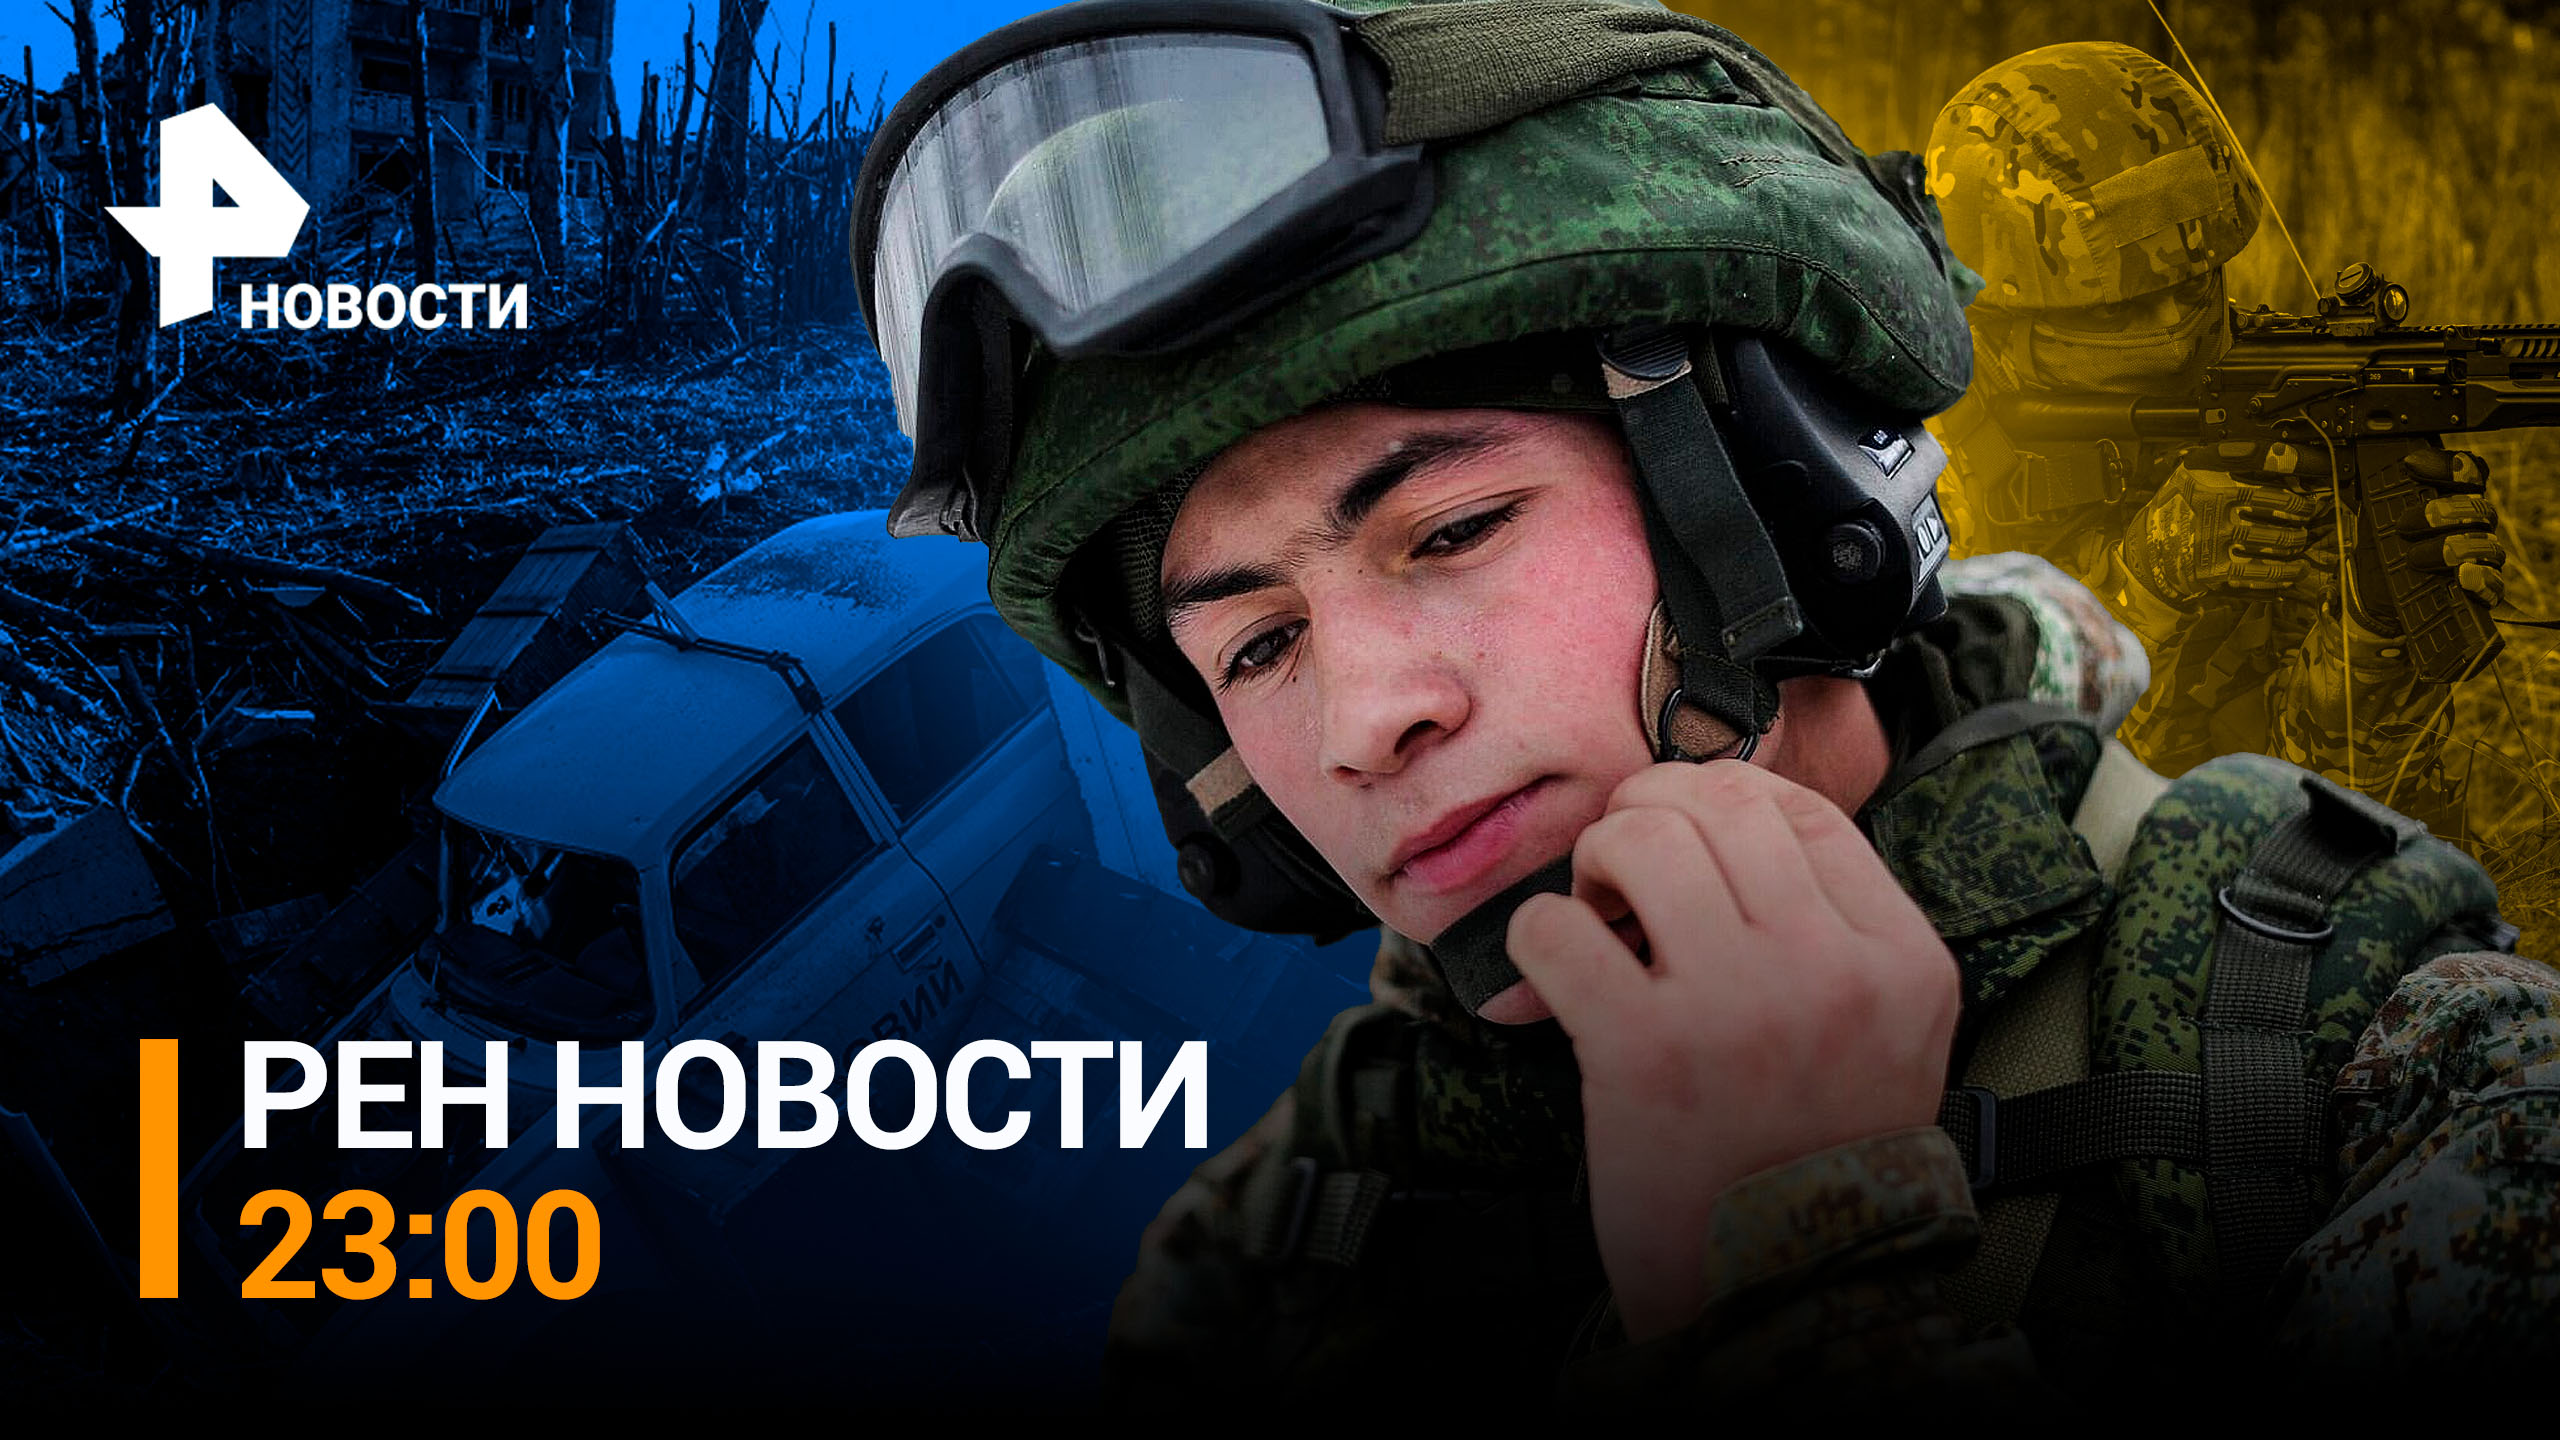 Сколько именно установок Patriot удалось уничтожить в Киеве / РЕН НОВОСТИ 23:00 от 17.06.23